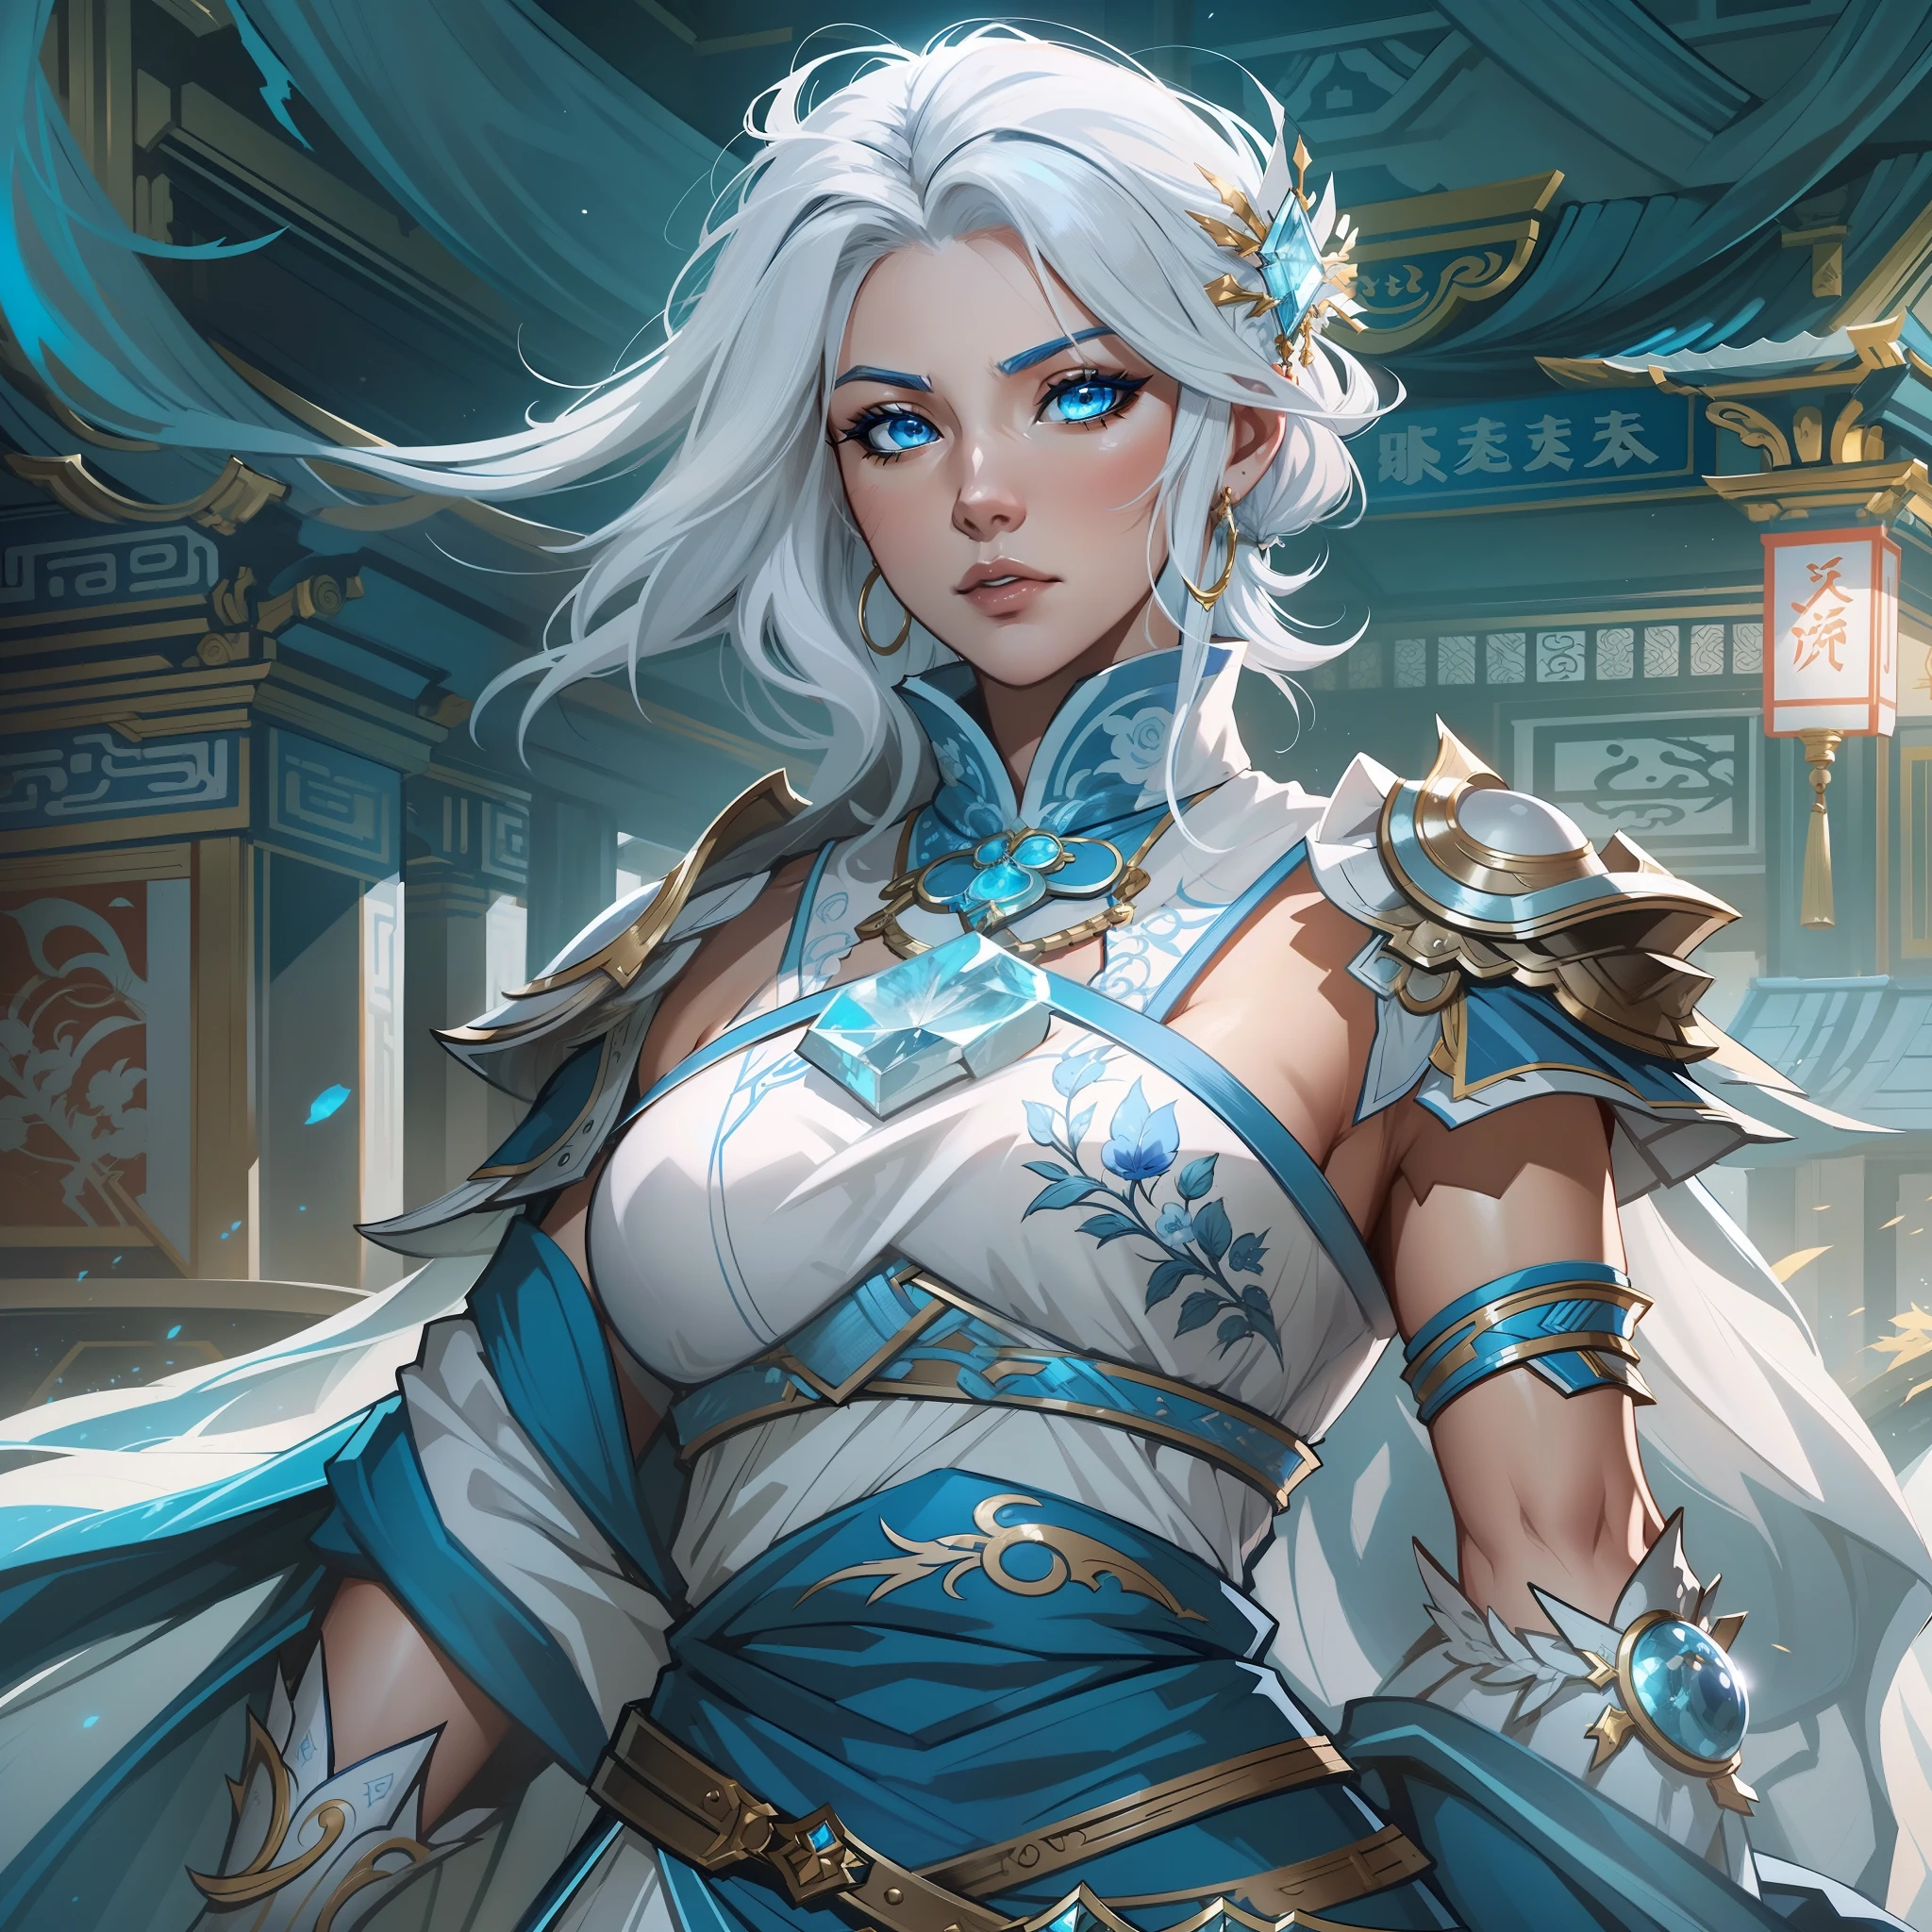 30代の力強いアマゾン女性のクローズアップ, 青い目と白い髪で, 青と白の重ね着フープスカートドレスを着て, レイヤードスカート, 青い目をしたヒロイン, 氷の力を持つ女性の剣士, お姫様, 中国寺院に立つ, 新しい衣装コンセプトデザイン, ブレイドアンドソウル風, 全身キャラクターコンセプト, 詳細なキャラクターデザイン, 月をテーマにした衣装, 青いアクセントの付いた衣装, カラーコンセプトアート, highly 詳細なキャラクターデザイン, 非常に詳細な顔, very 非常に詳細な顔, アンリアルエンジンレンダリング, ファイナルファンタジー14スタイル